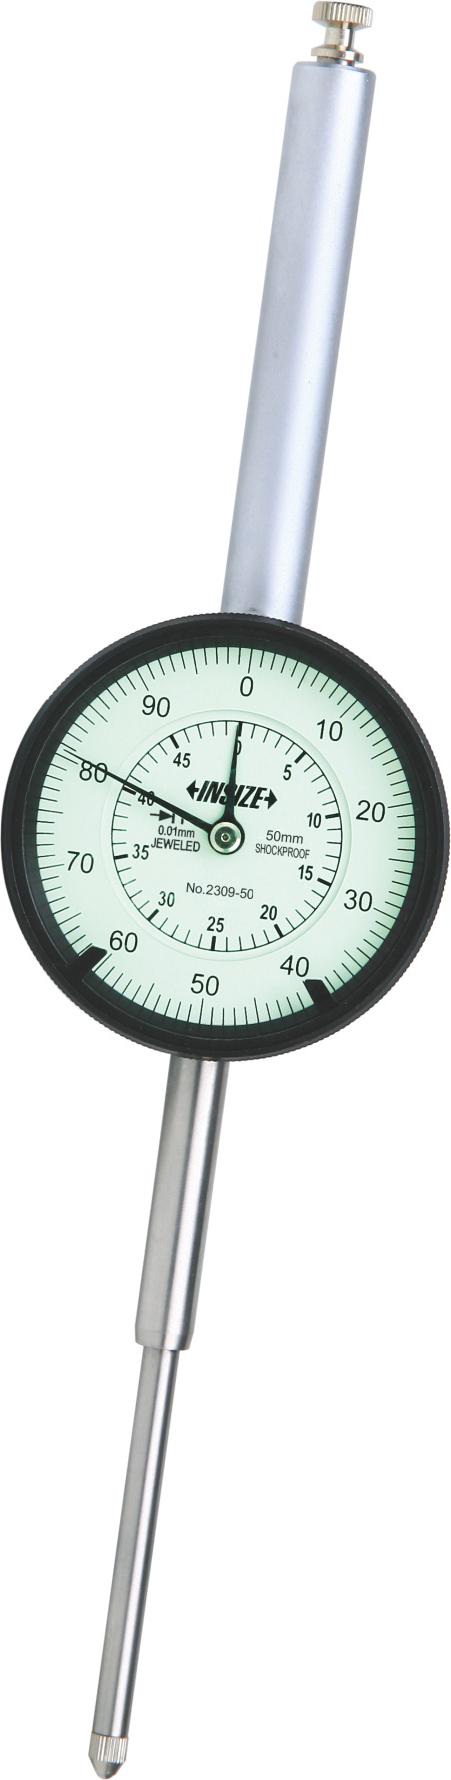 2309 - Μετρητικό Ρολόι Γράφτη μεγάλης διαδρομής 100 mm